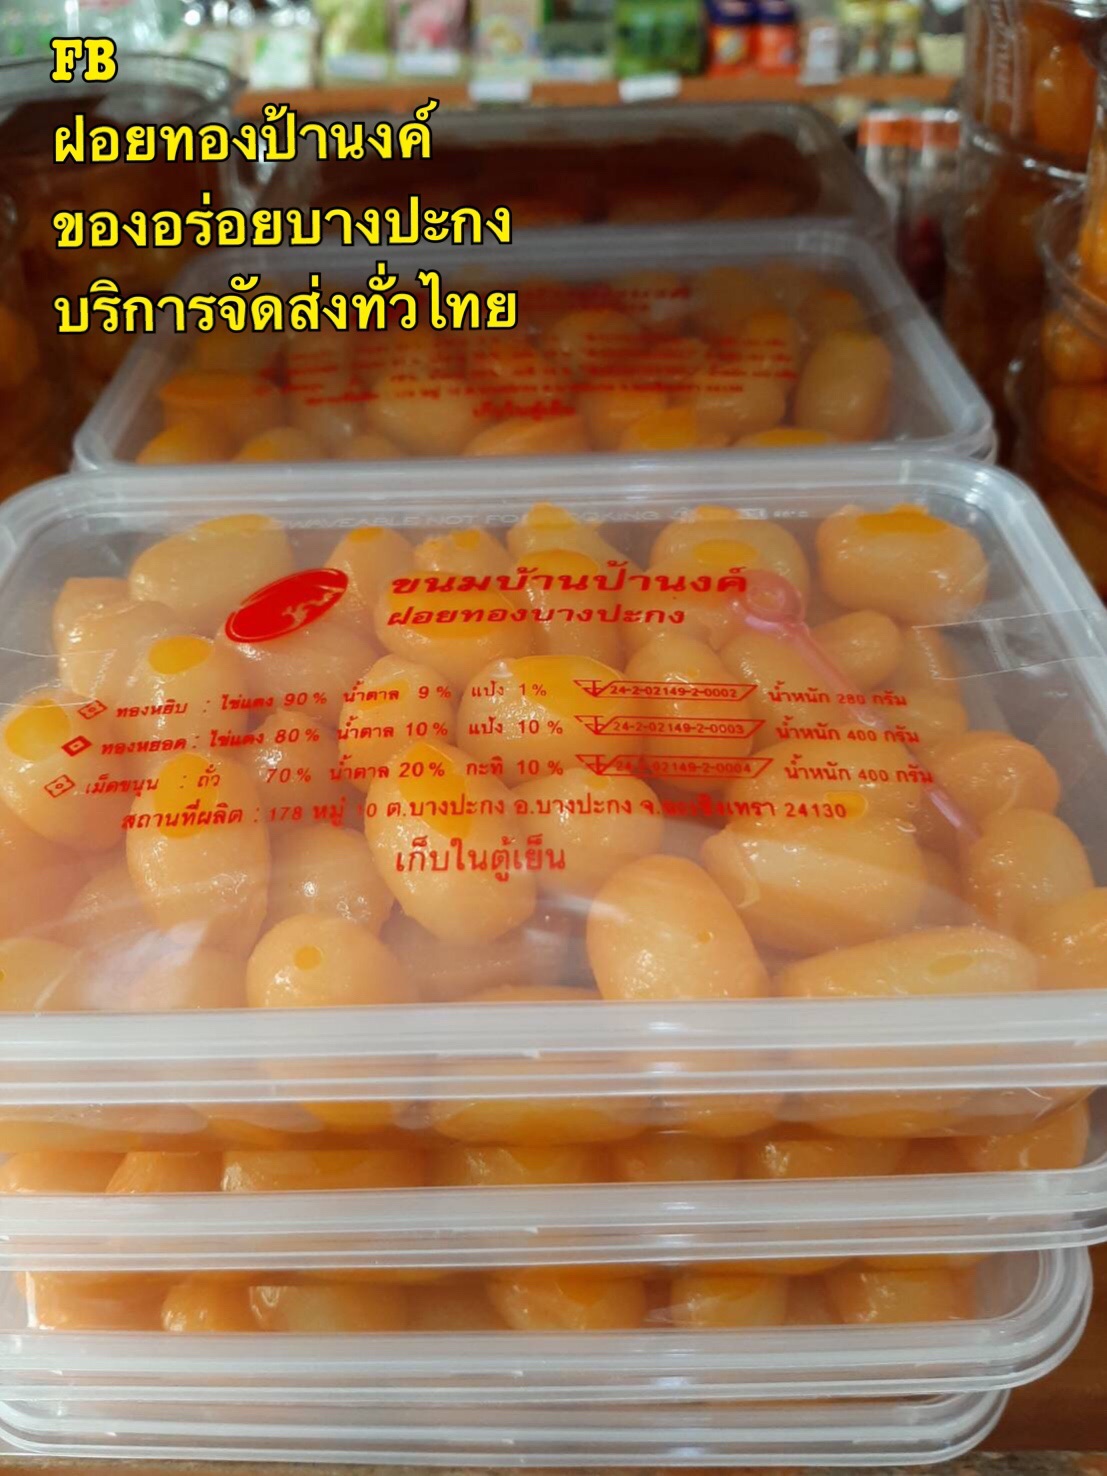 เม็ดขนุนกล่องใหญ่ ขนมบ้านป้านงค์ ฝอยทองบางปะกง ของอร่อยบางปะกง บริการจัดส่งทั่วไทย